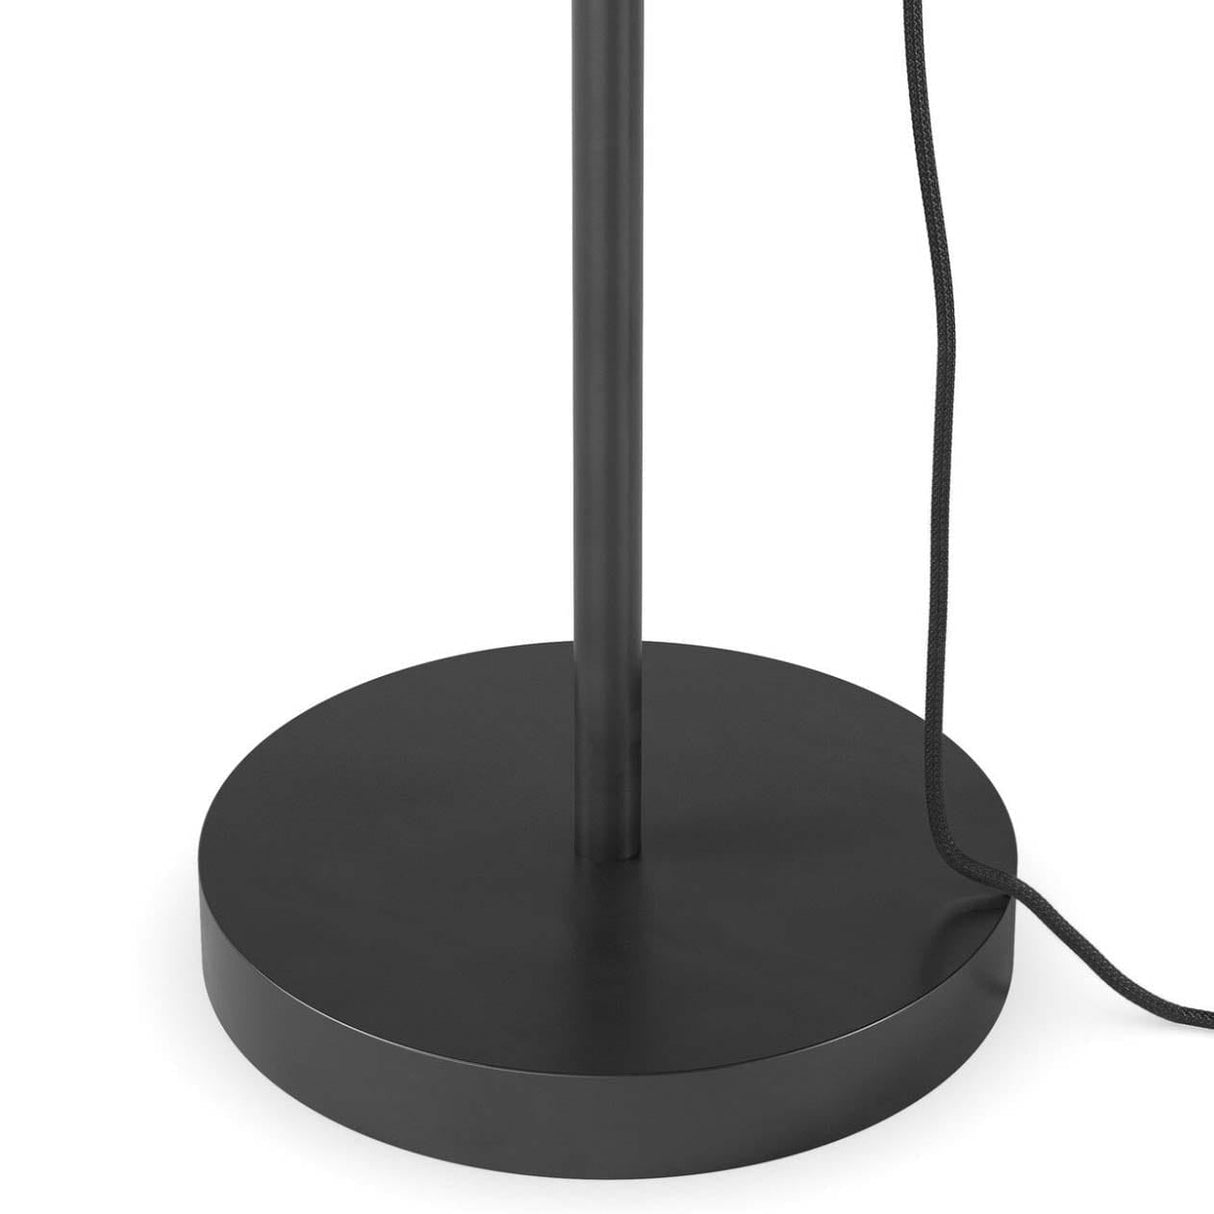 Schwung Odyssey 1 Floor Lamp Floor Lamp